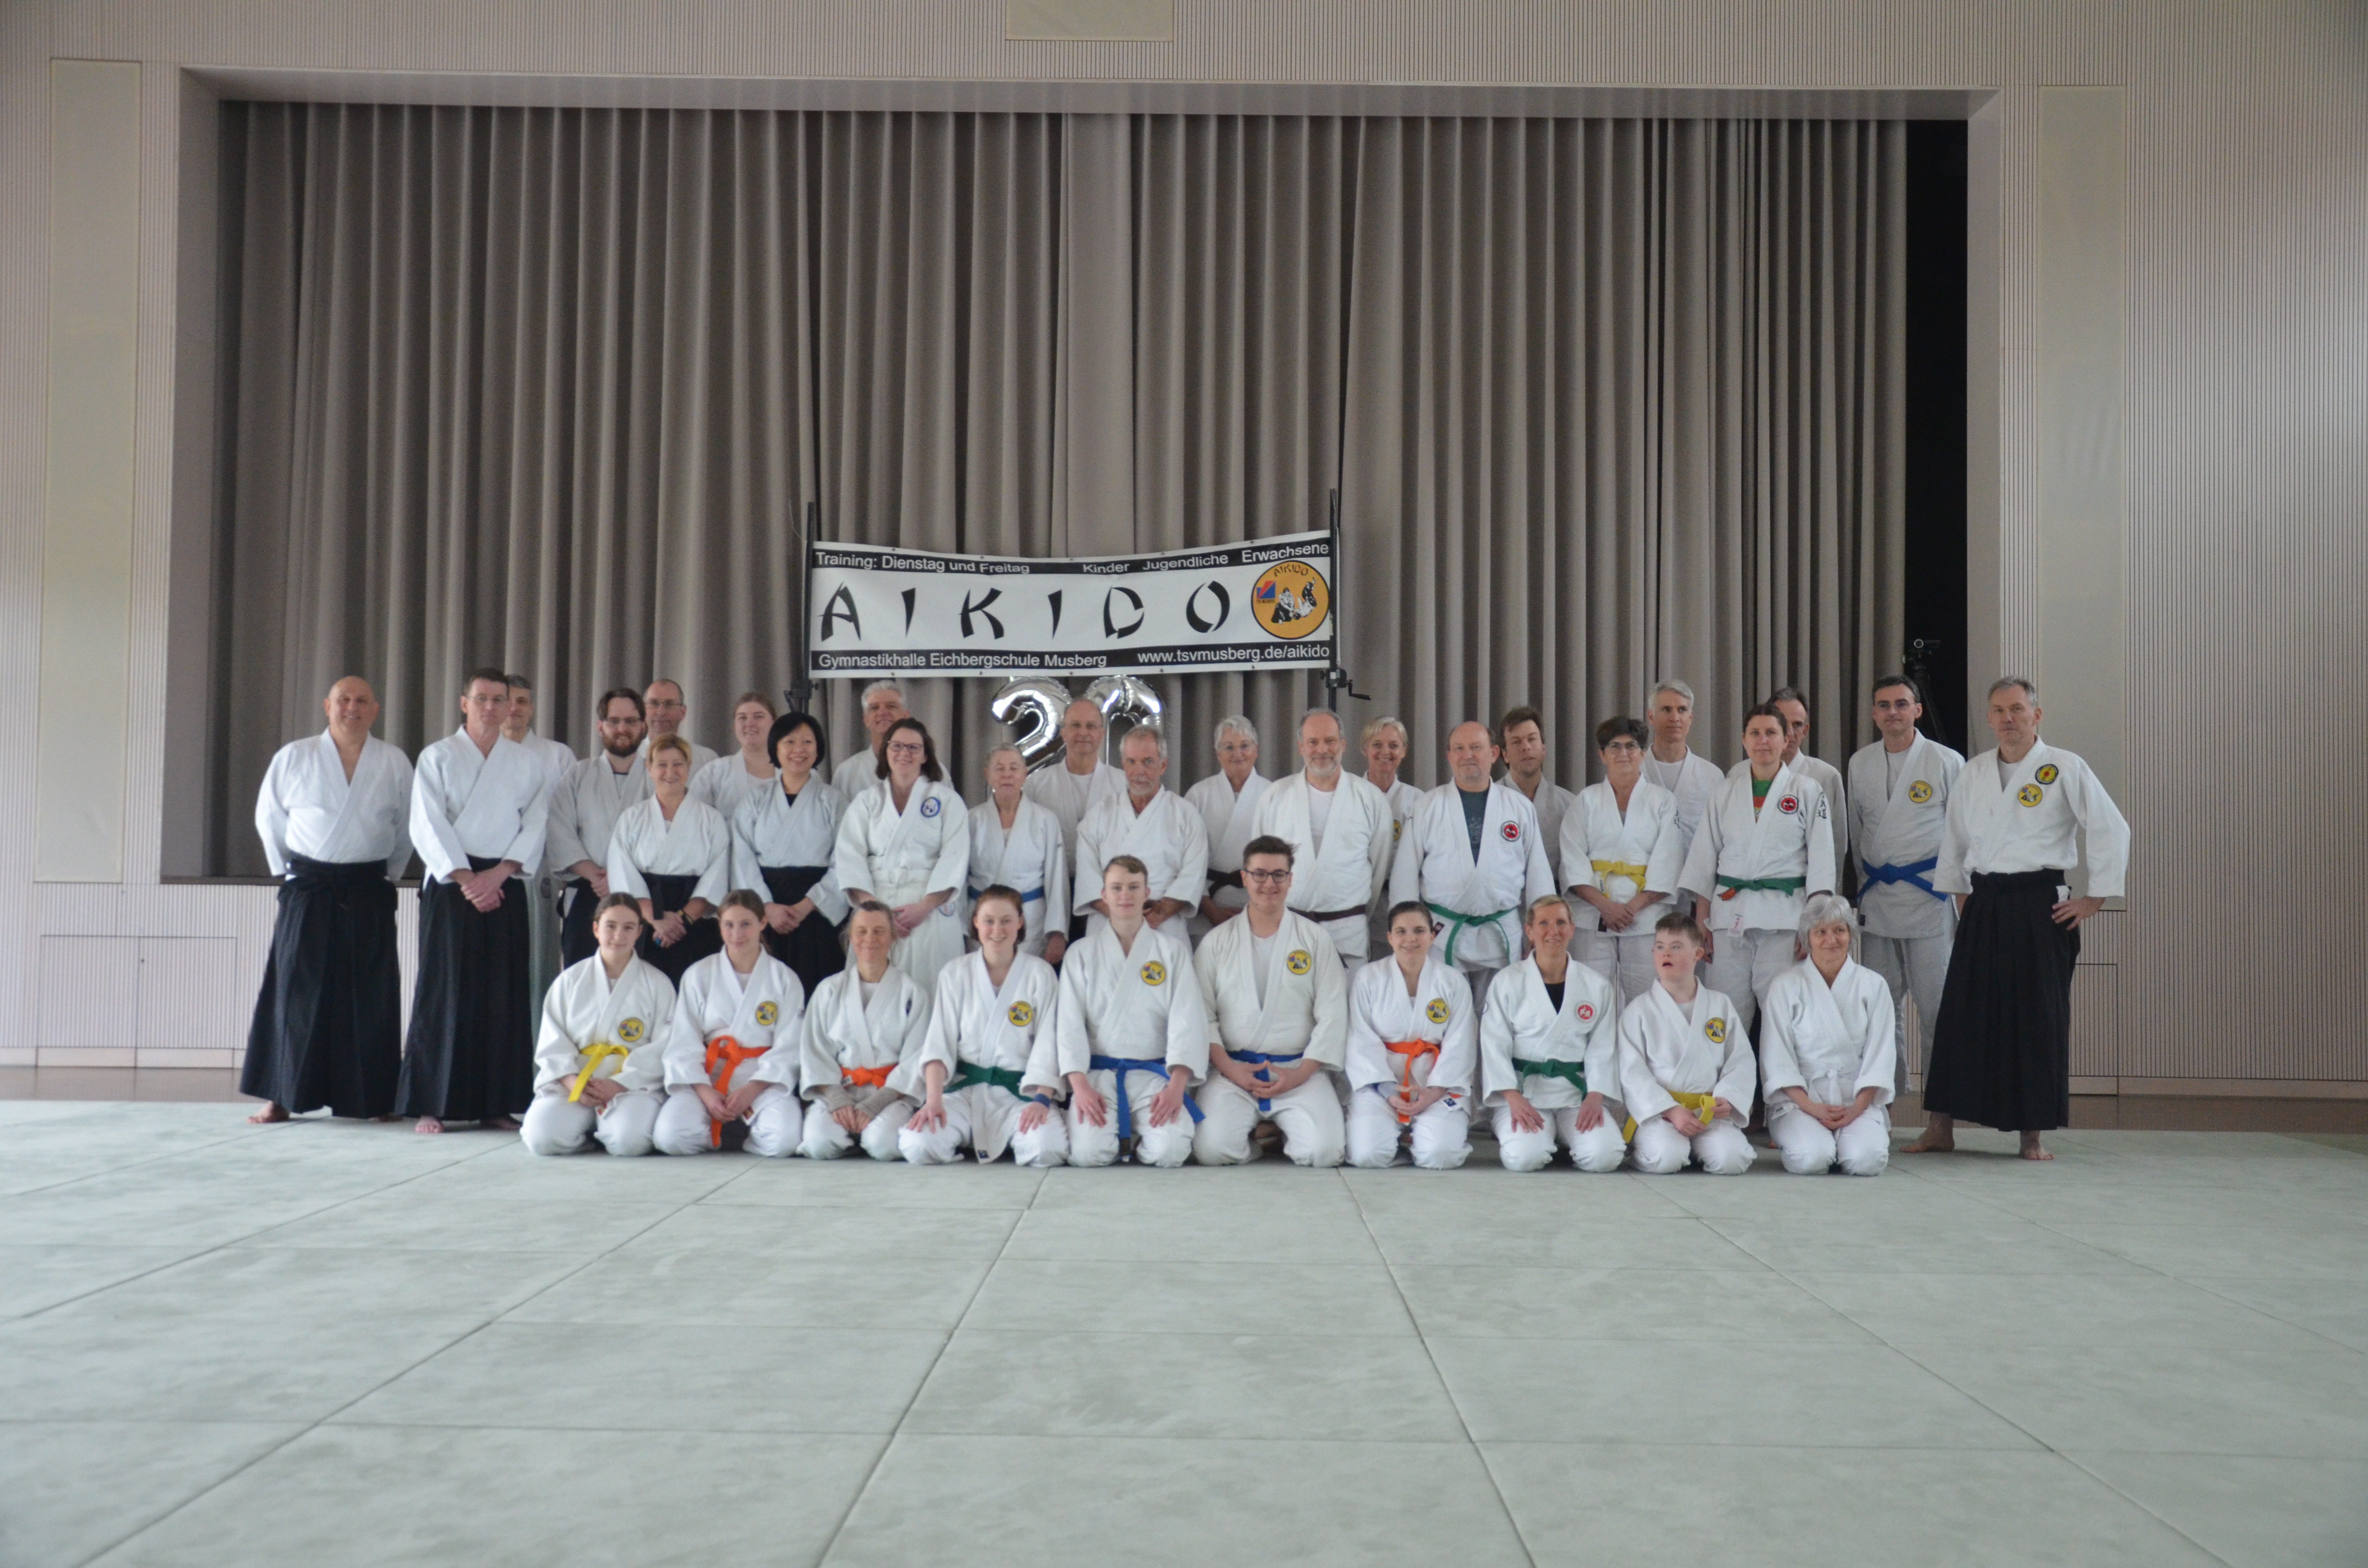 23/03 - Jubiläums-Lehrgang zum 20-jährigen Bestehen der Aikido-Gruppe im TSV Musberg